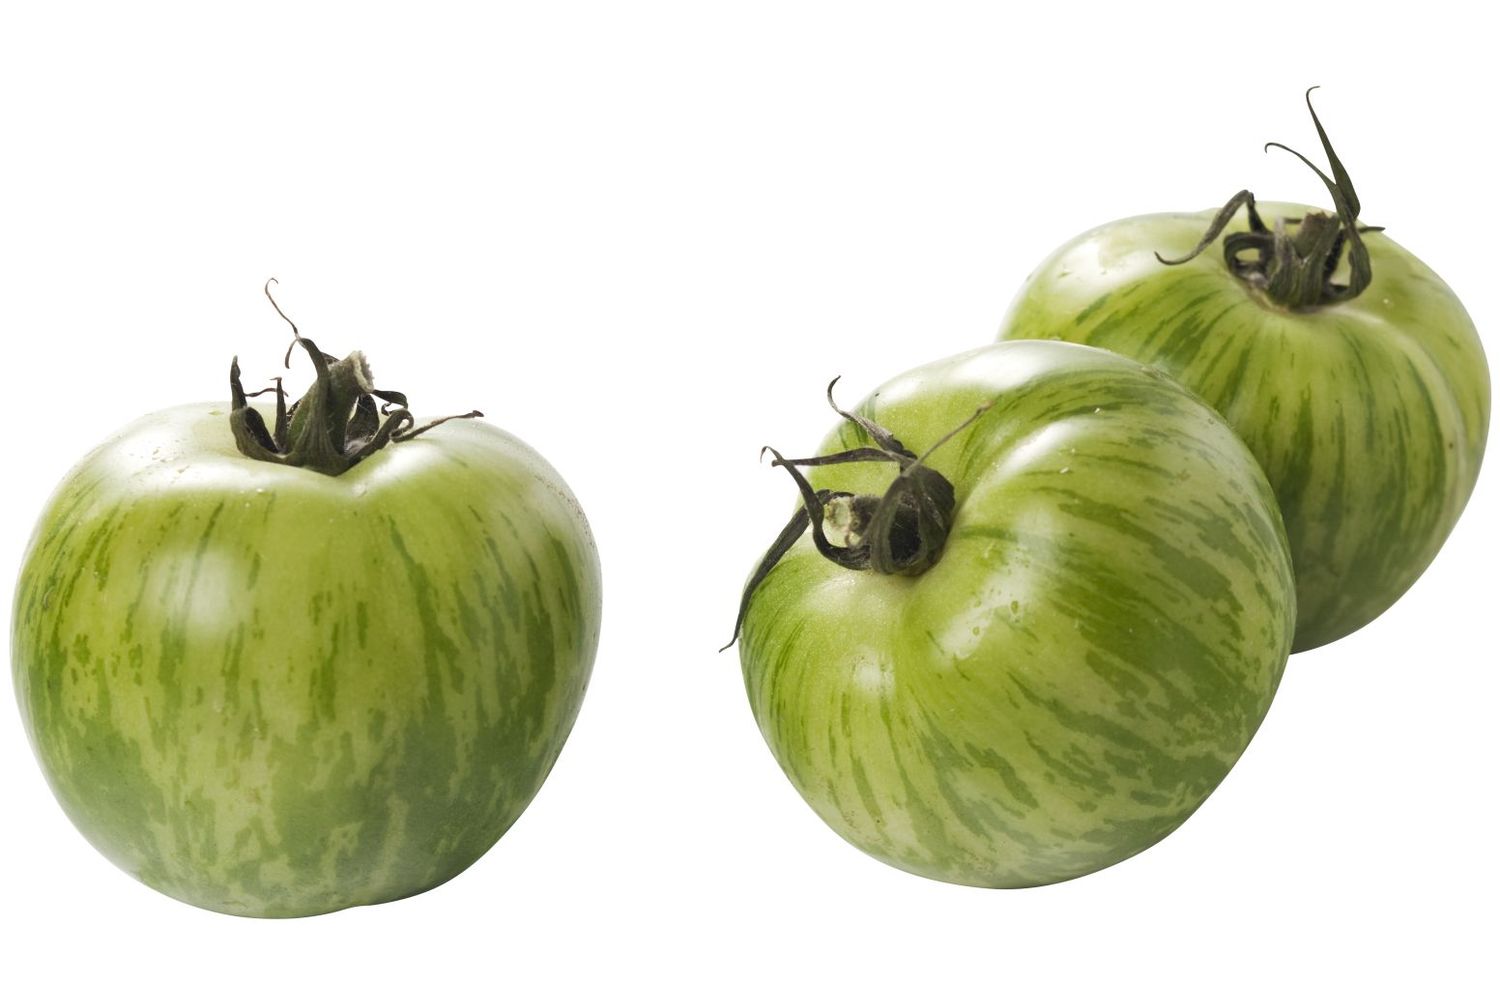 Tijger tomaten groen verpakt 500gr kist 6 stuks 1